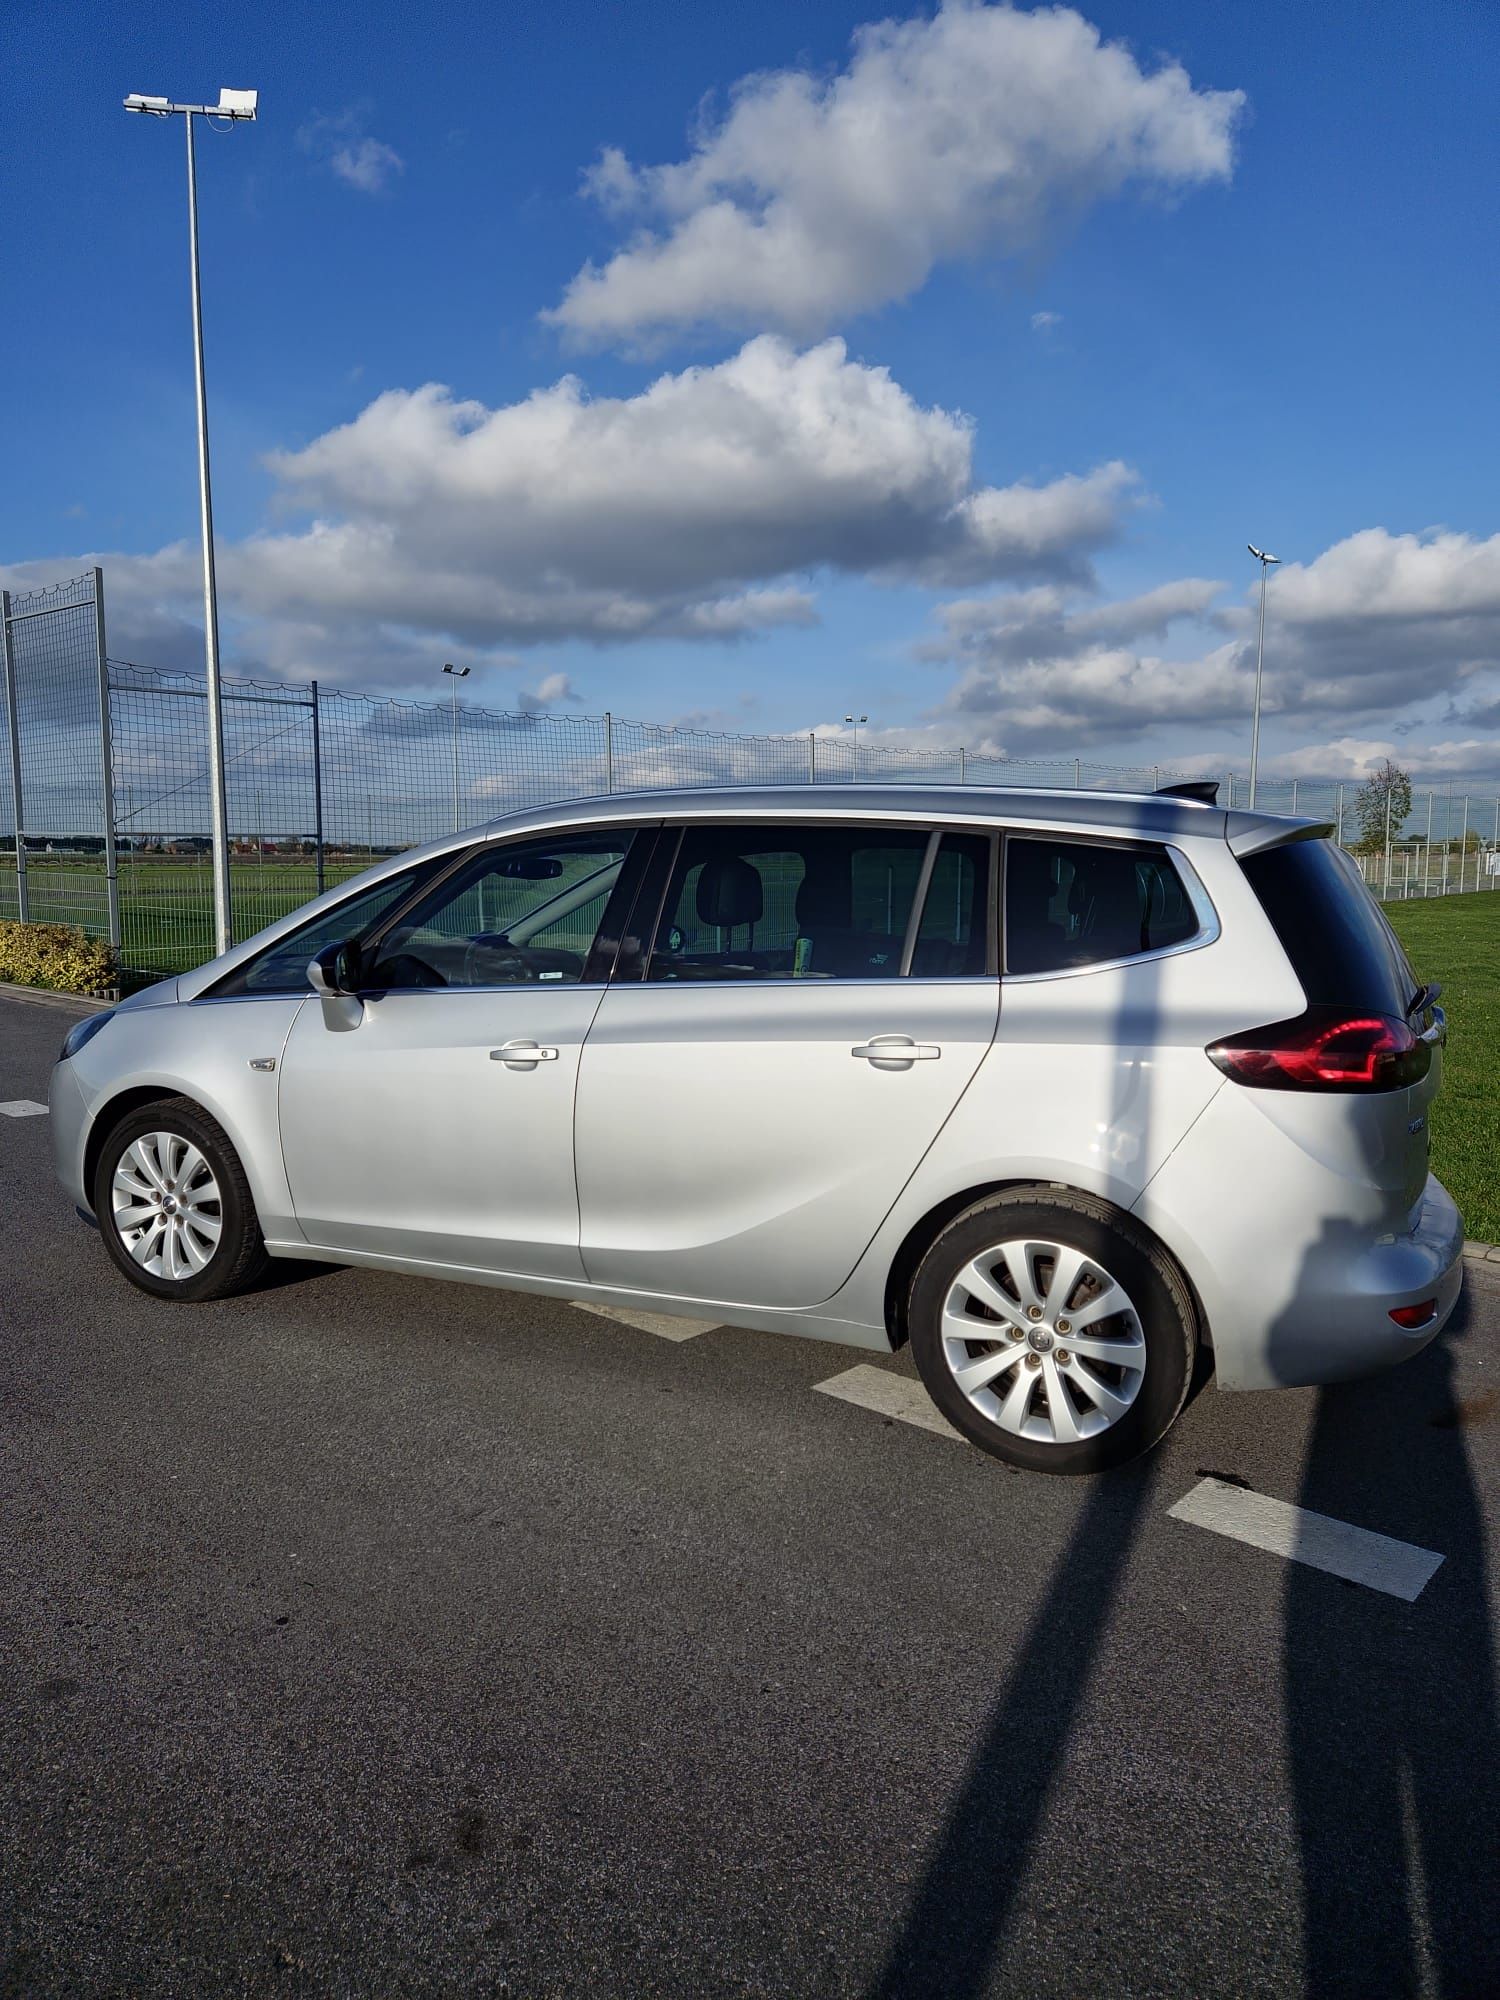 Opel Zafira C. 2016r. 1.6 cdti